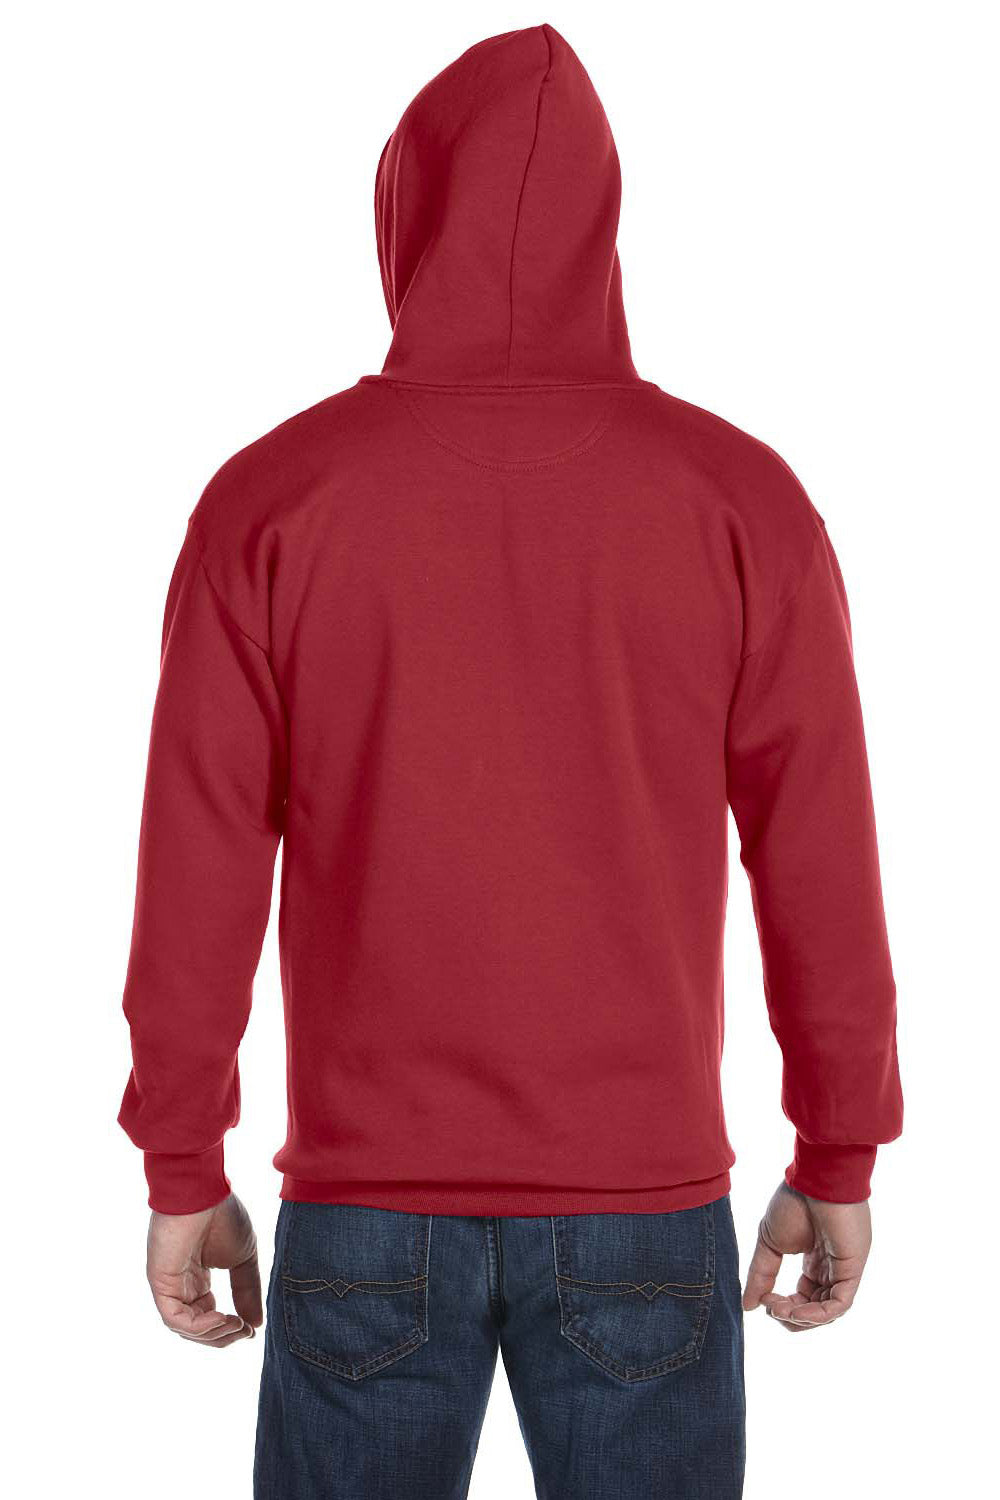 Anvil 71600 Mens Fleece Full Zip Hooded Sweatshirt Hoodie Independence Red Back